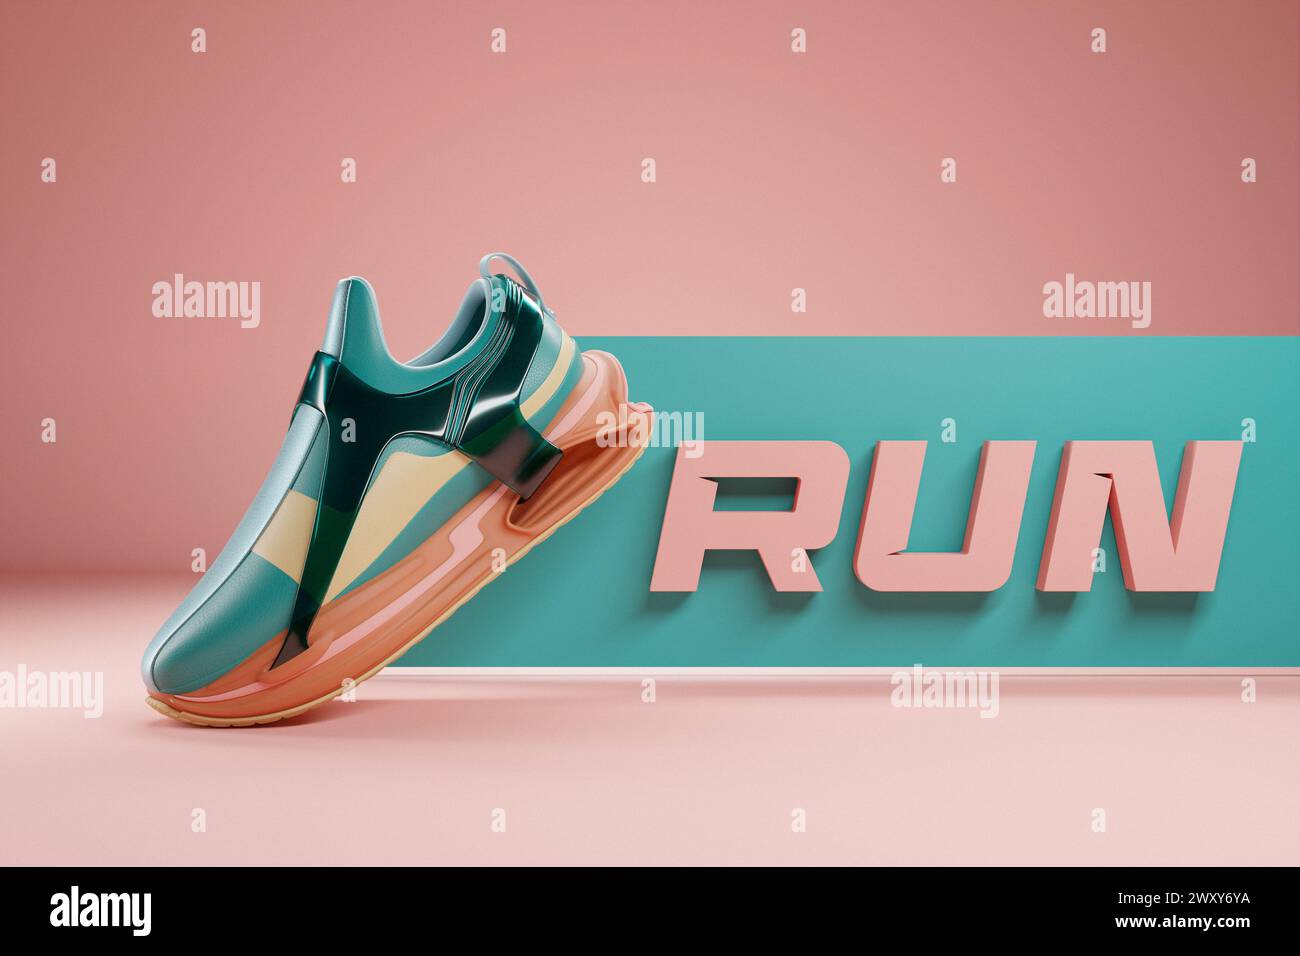 ilustración 3d de nuevas zapatillas deportivas coloridas en una suela de espuma de colores enormes, zapatillas con la frase correr. Zapatillas de moda. Foto de stock